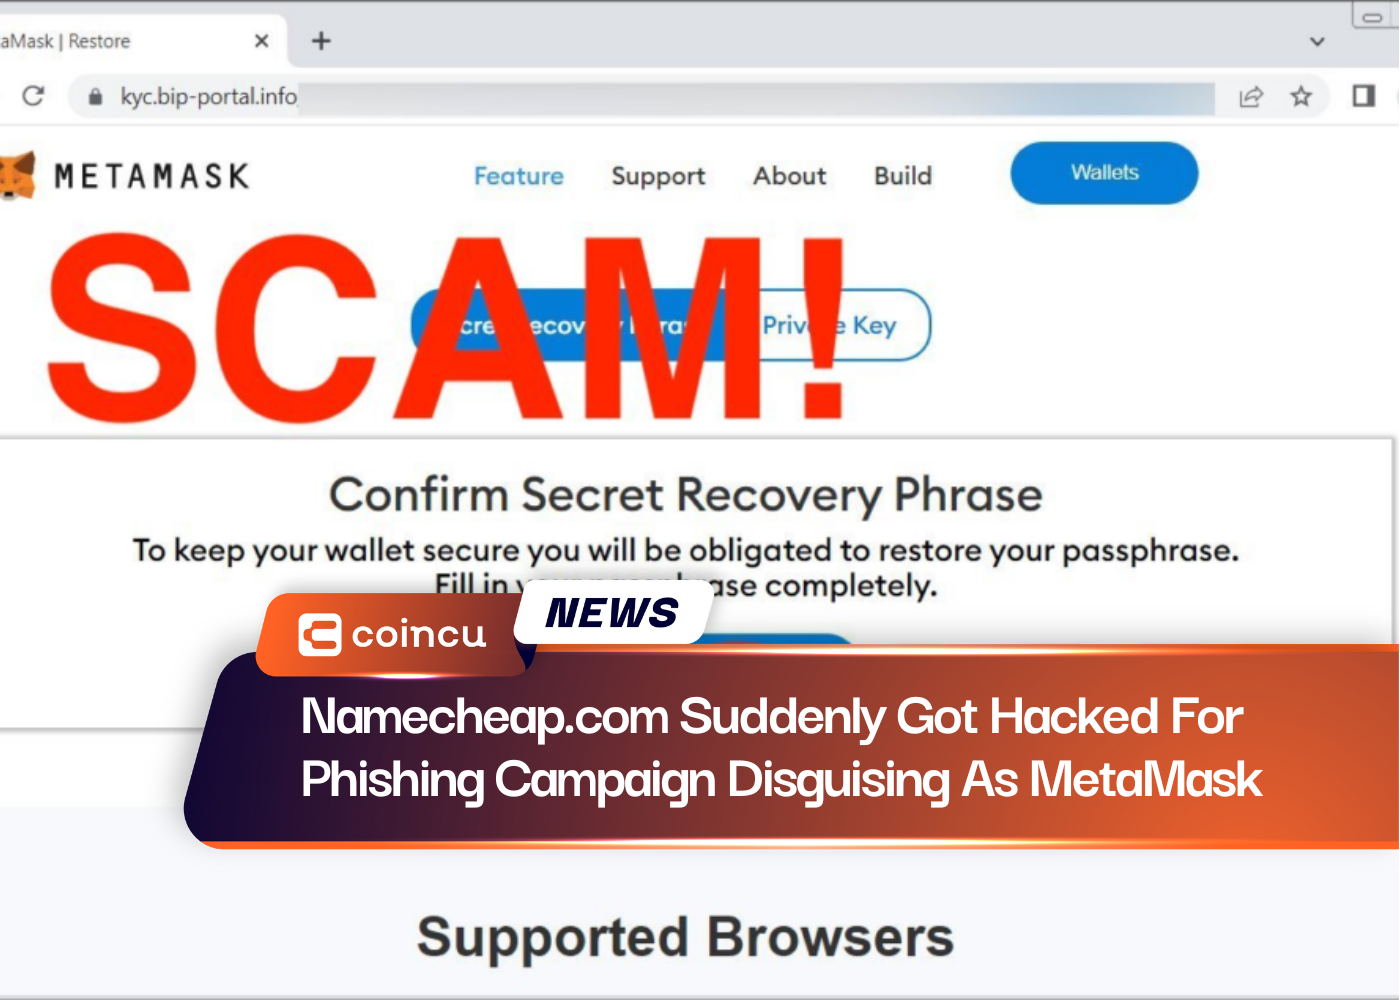 تم اختراق موقع Namecheap.com فجأة بسبب حملة تصيد احتيالي متنكرة في صورة MetaMask